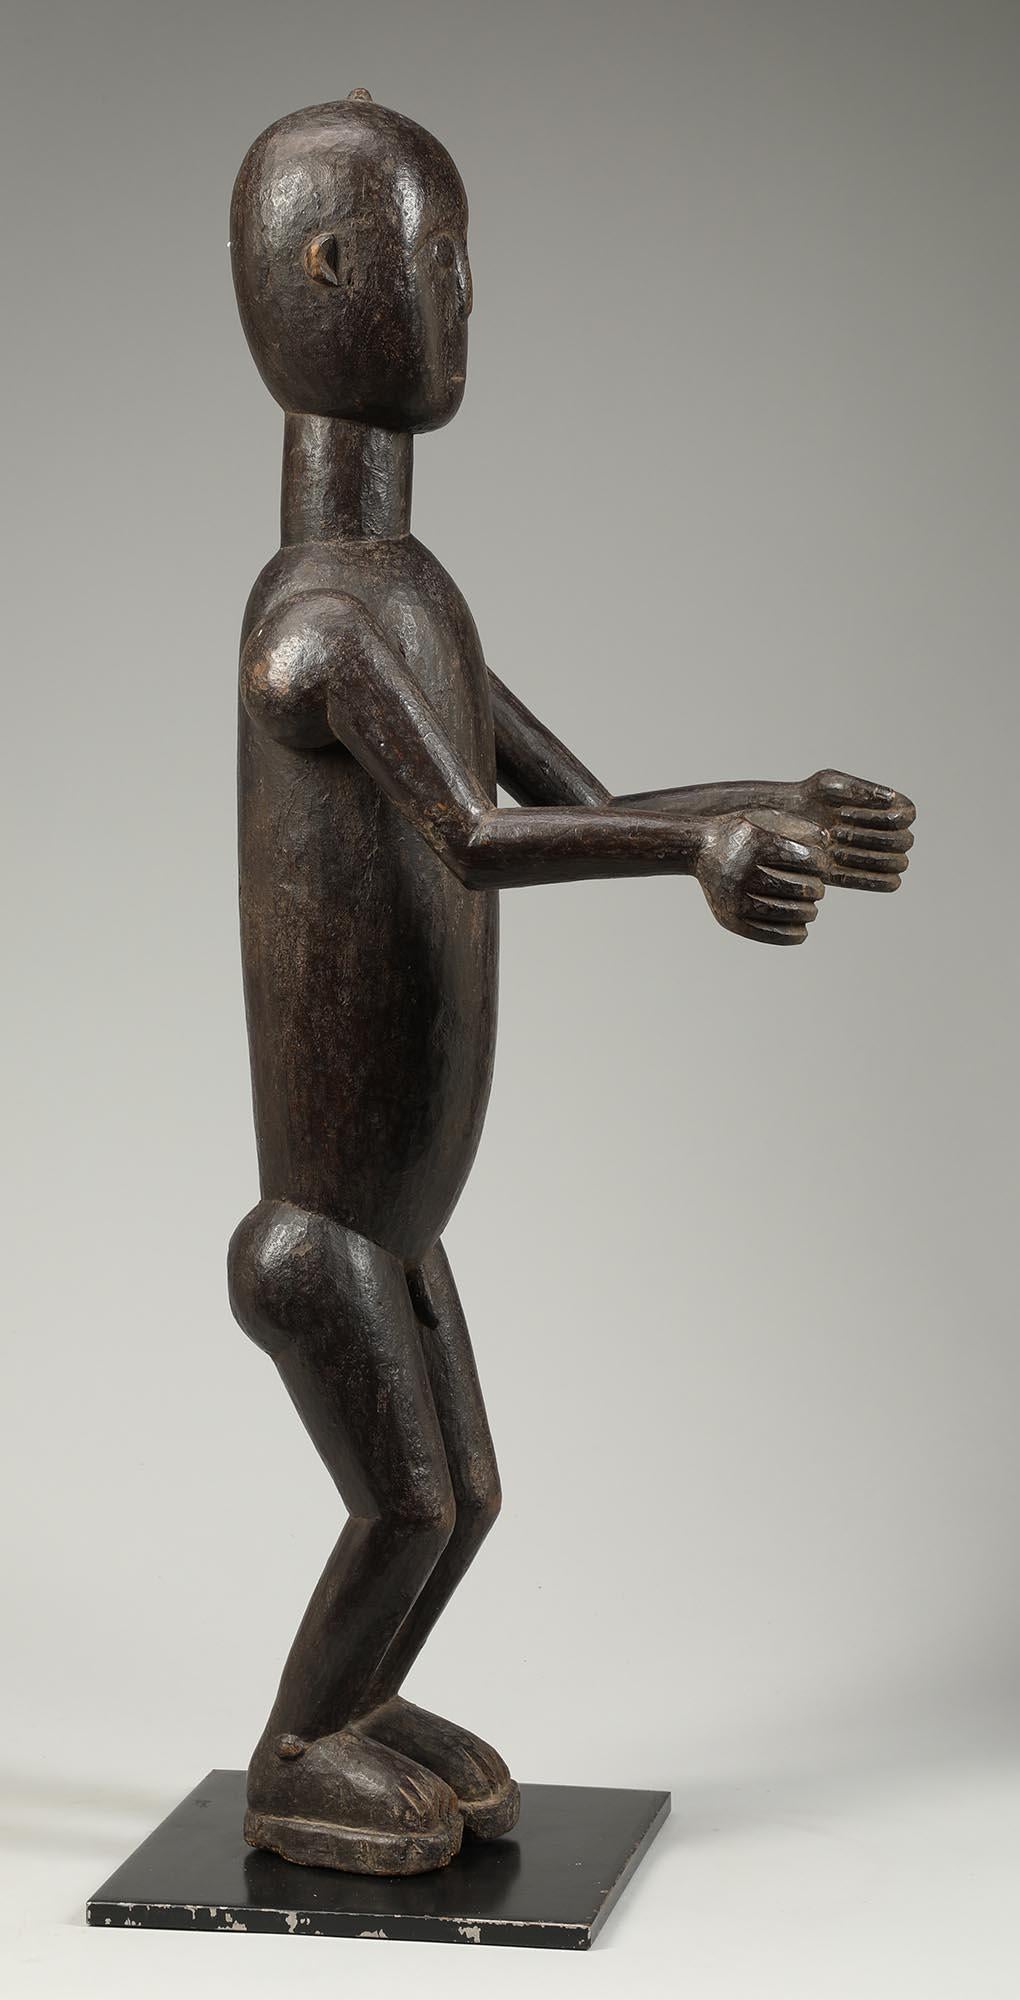 Abron Drum Attendant stehende Figur mit beiden Armen nach vorne. Aus Ghana, Anfang des 20. Jahrhunderts. Reiche, dunkle Patina auf der Oberfläche.
Eine wunderbare stromlinienförmige (wirklich Art Deco) oder kubistisch anmutende tanzende männliche